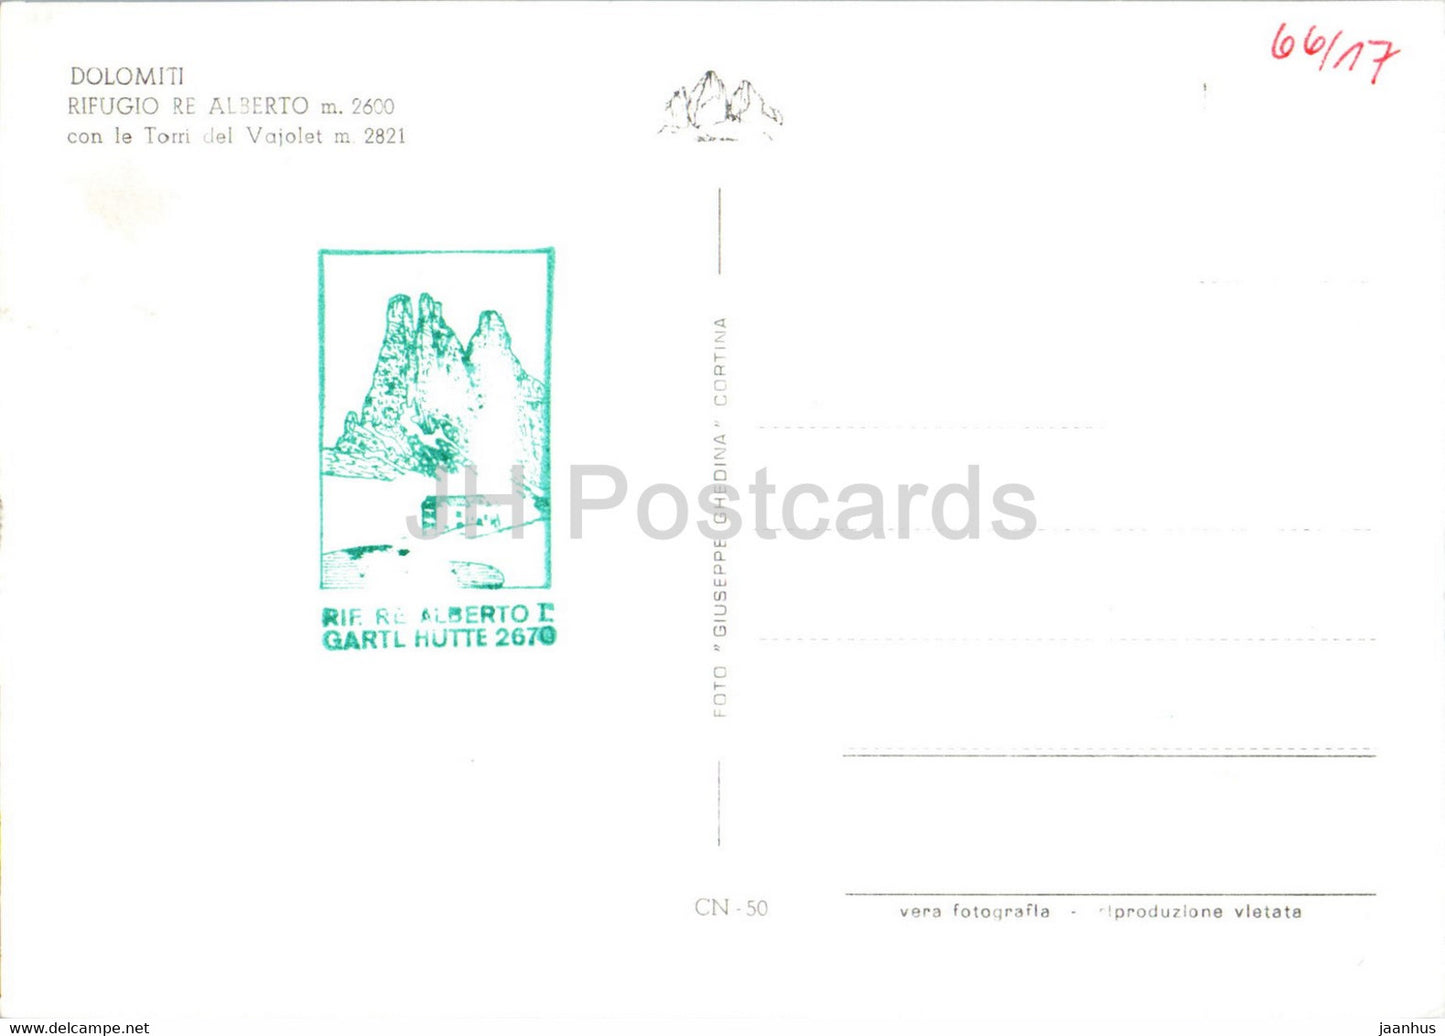 Dolomiti - Rifugio Re Alberto con le Torri del Vajolet - alte Postkarte - Italien - unbenutzt